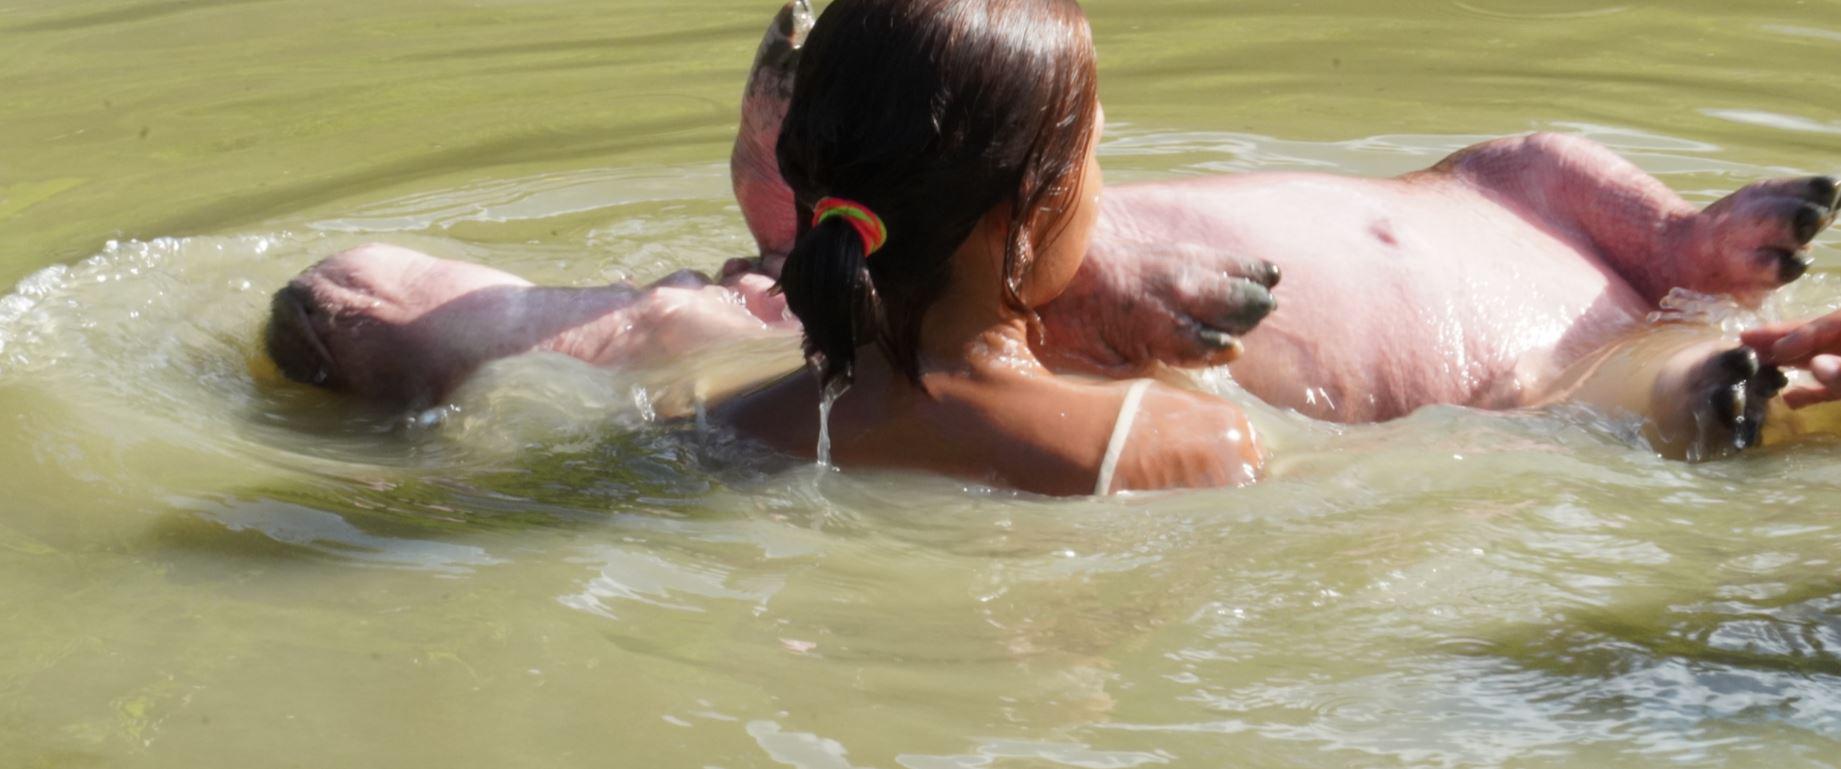 $!La cría se pierde en la profundidad del agua y luego vuelve a salir. Humana y animal se persiguen y se abrazan.